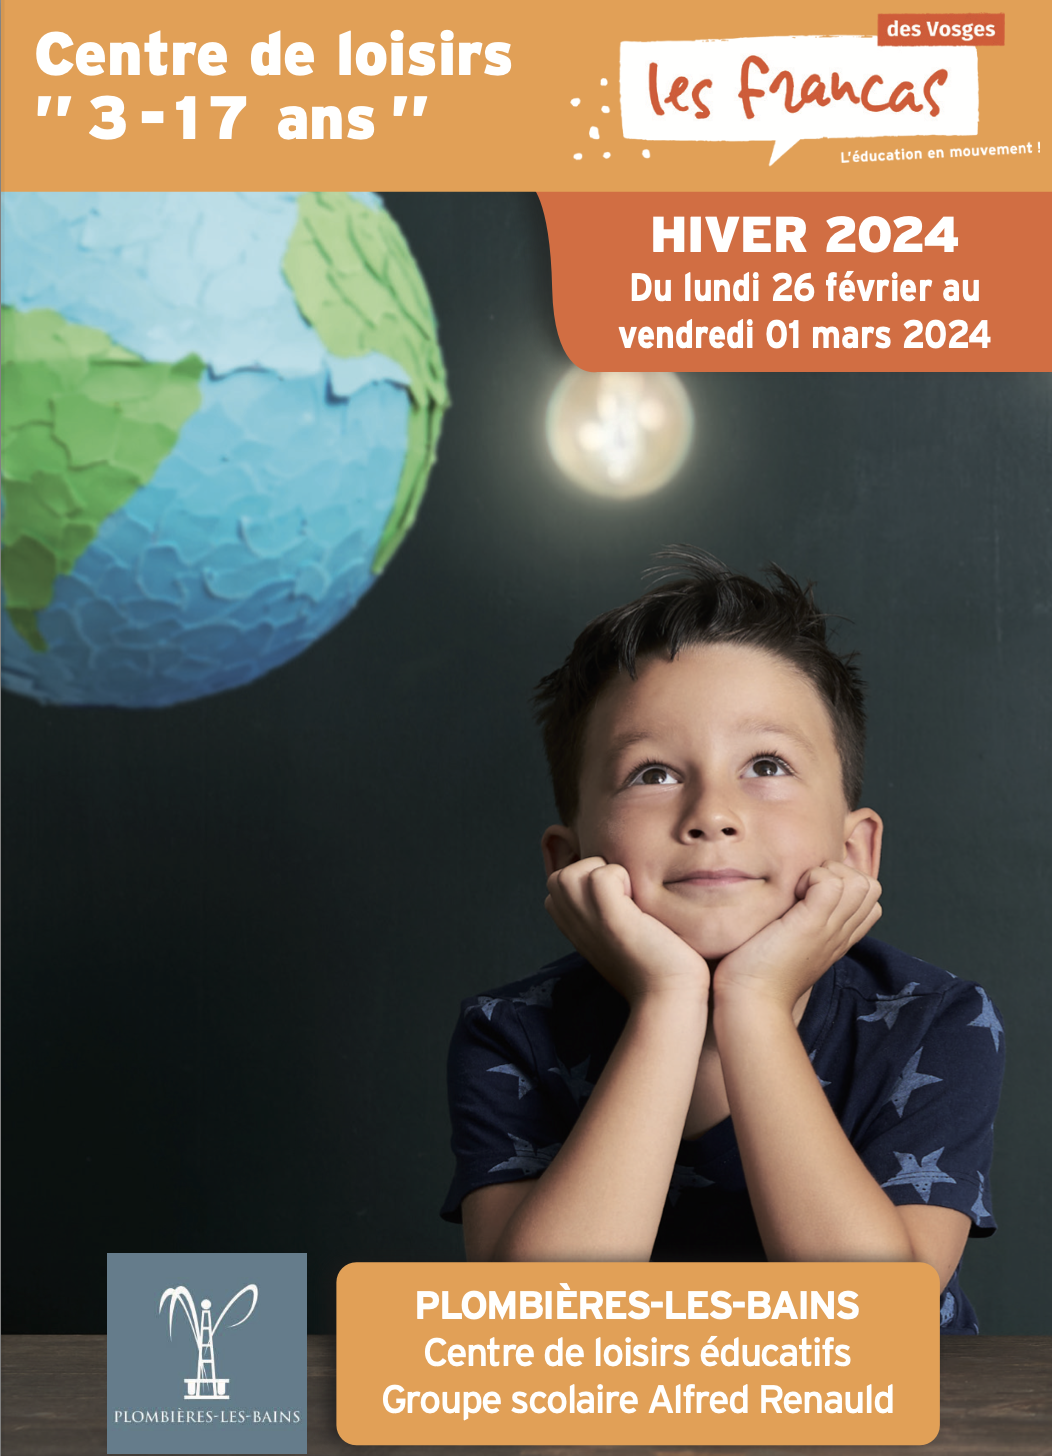 Carte de présentation ALSH Hiver 2024 Plombières-les-Bains